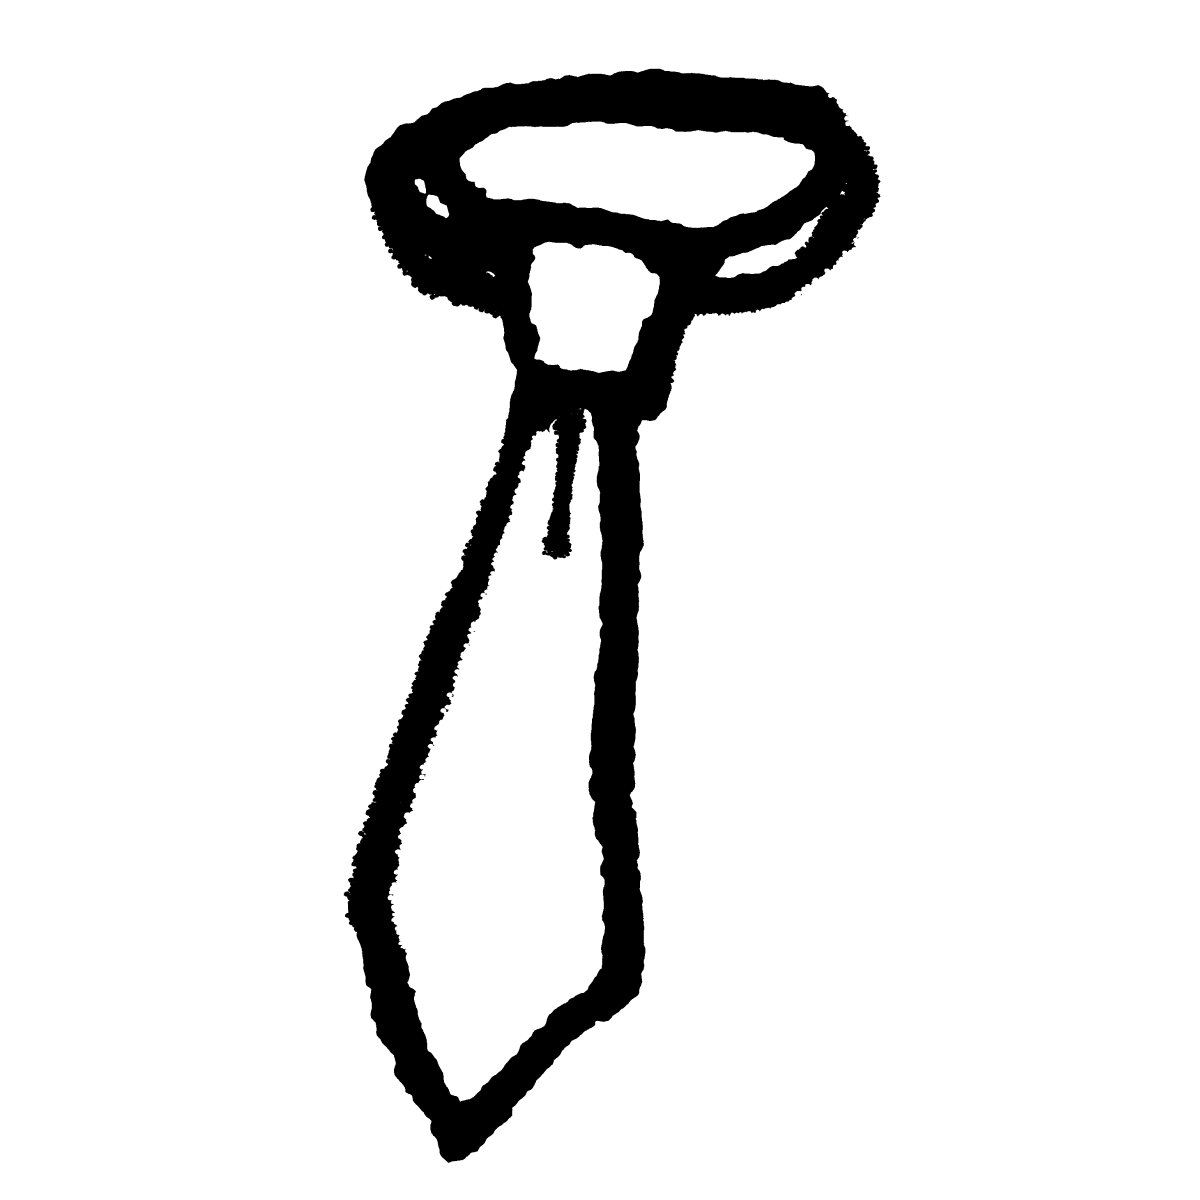 輪になったネクタイのイラスト / A hooded tie Illustration